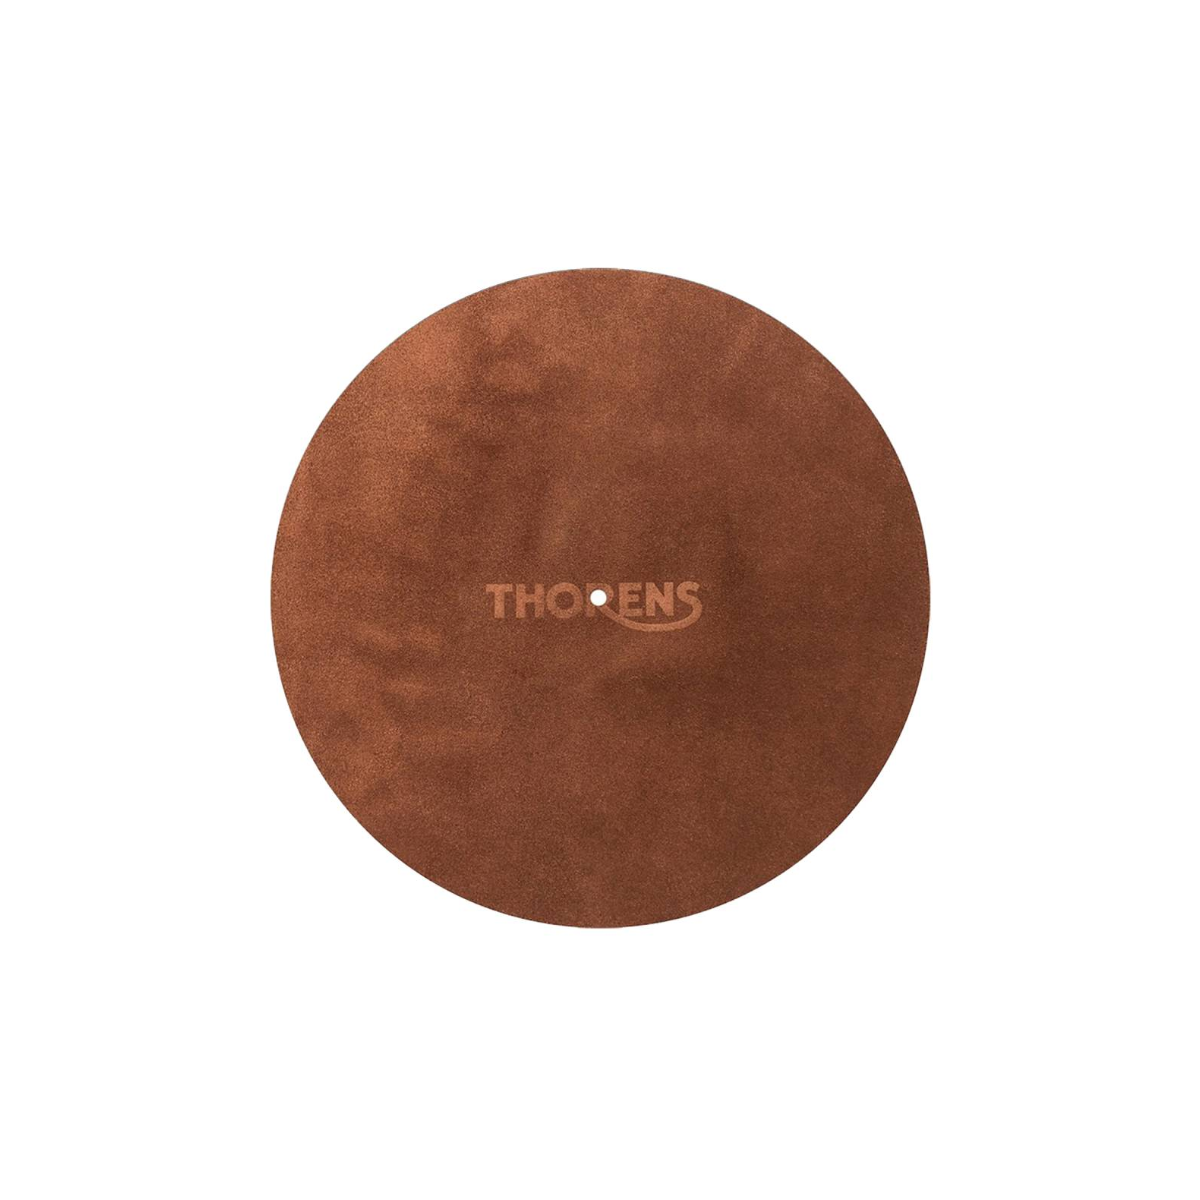 Feutrines platines vinyles - Thorens - Feutrine cuir marron